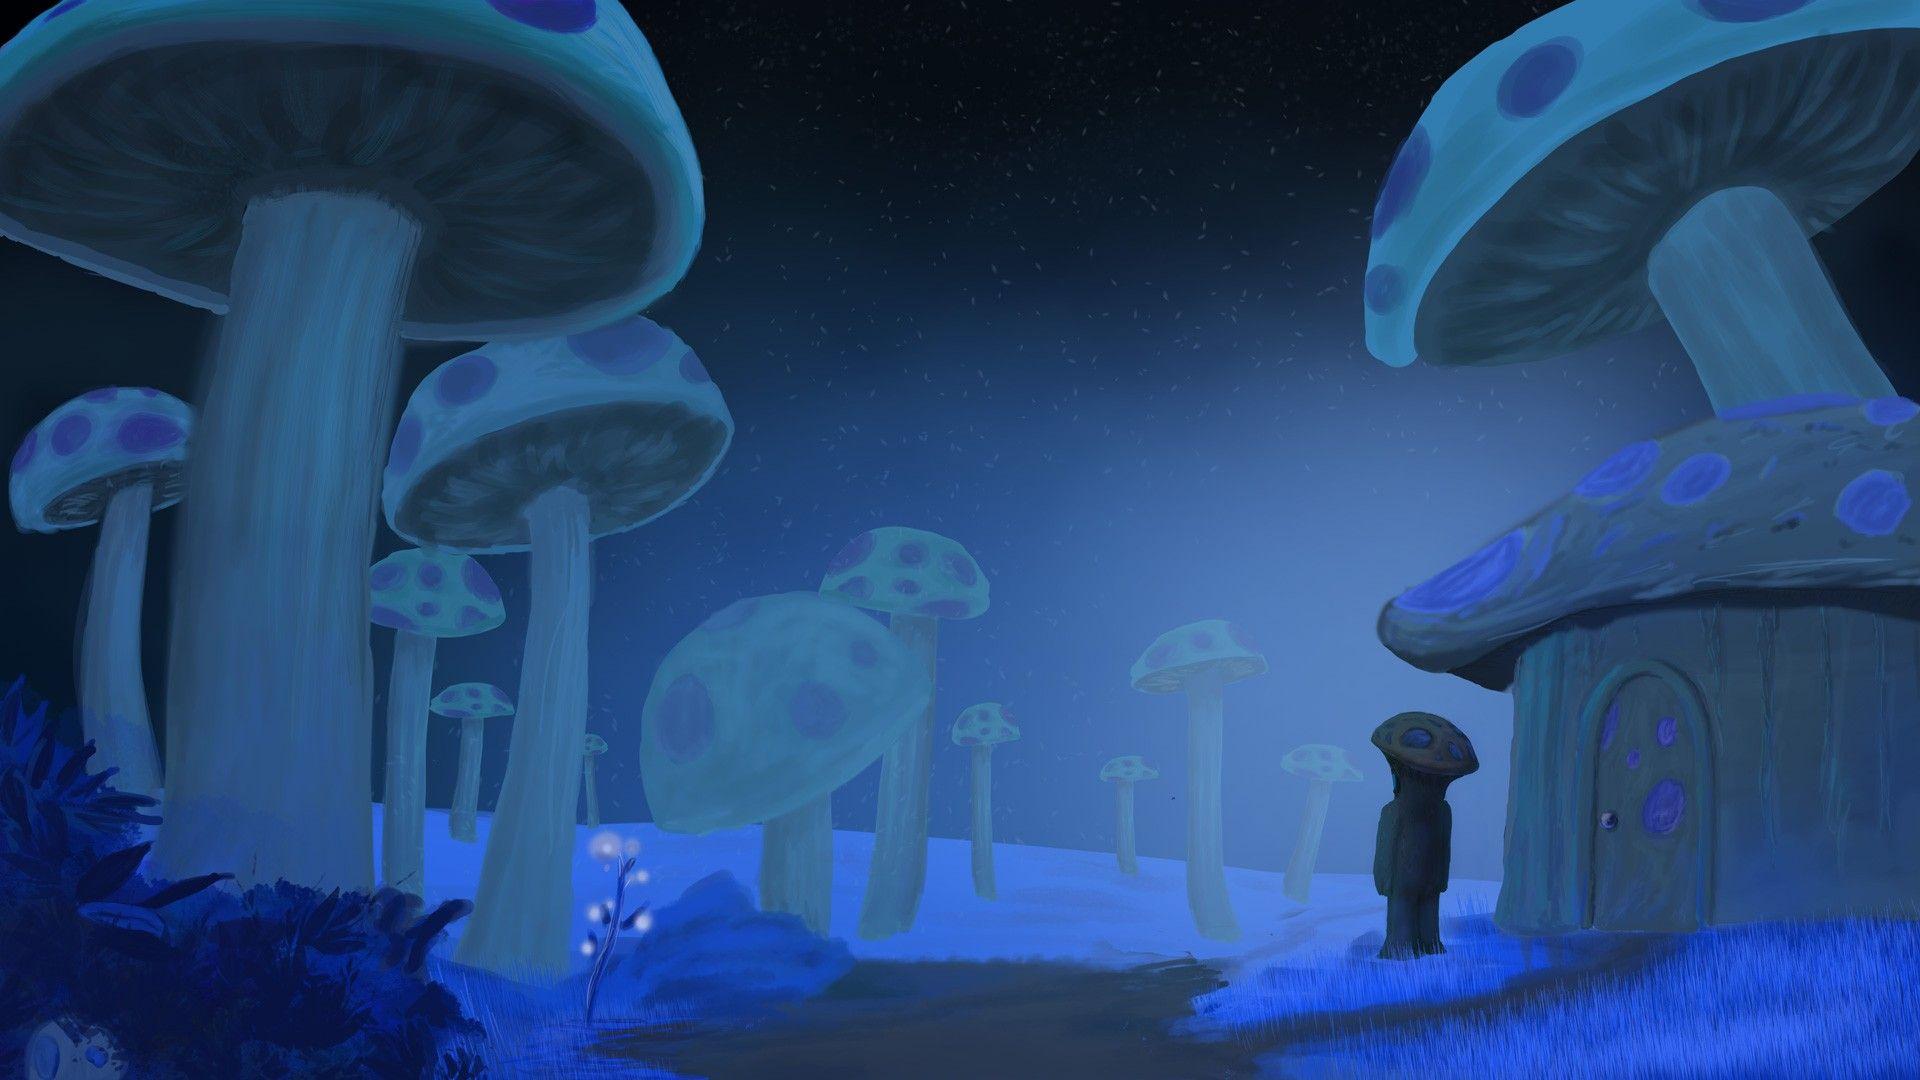 Wallpaper, illustration, video games, artwork, mushroom, blue